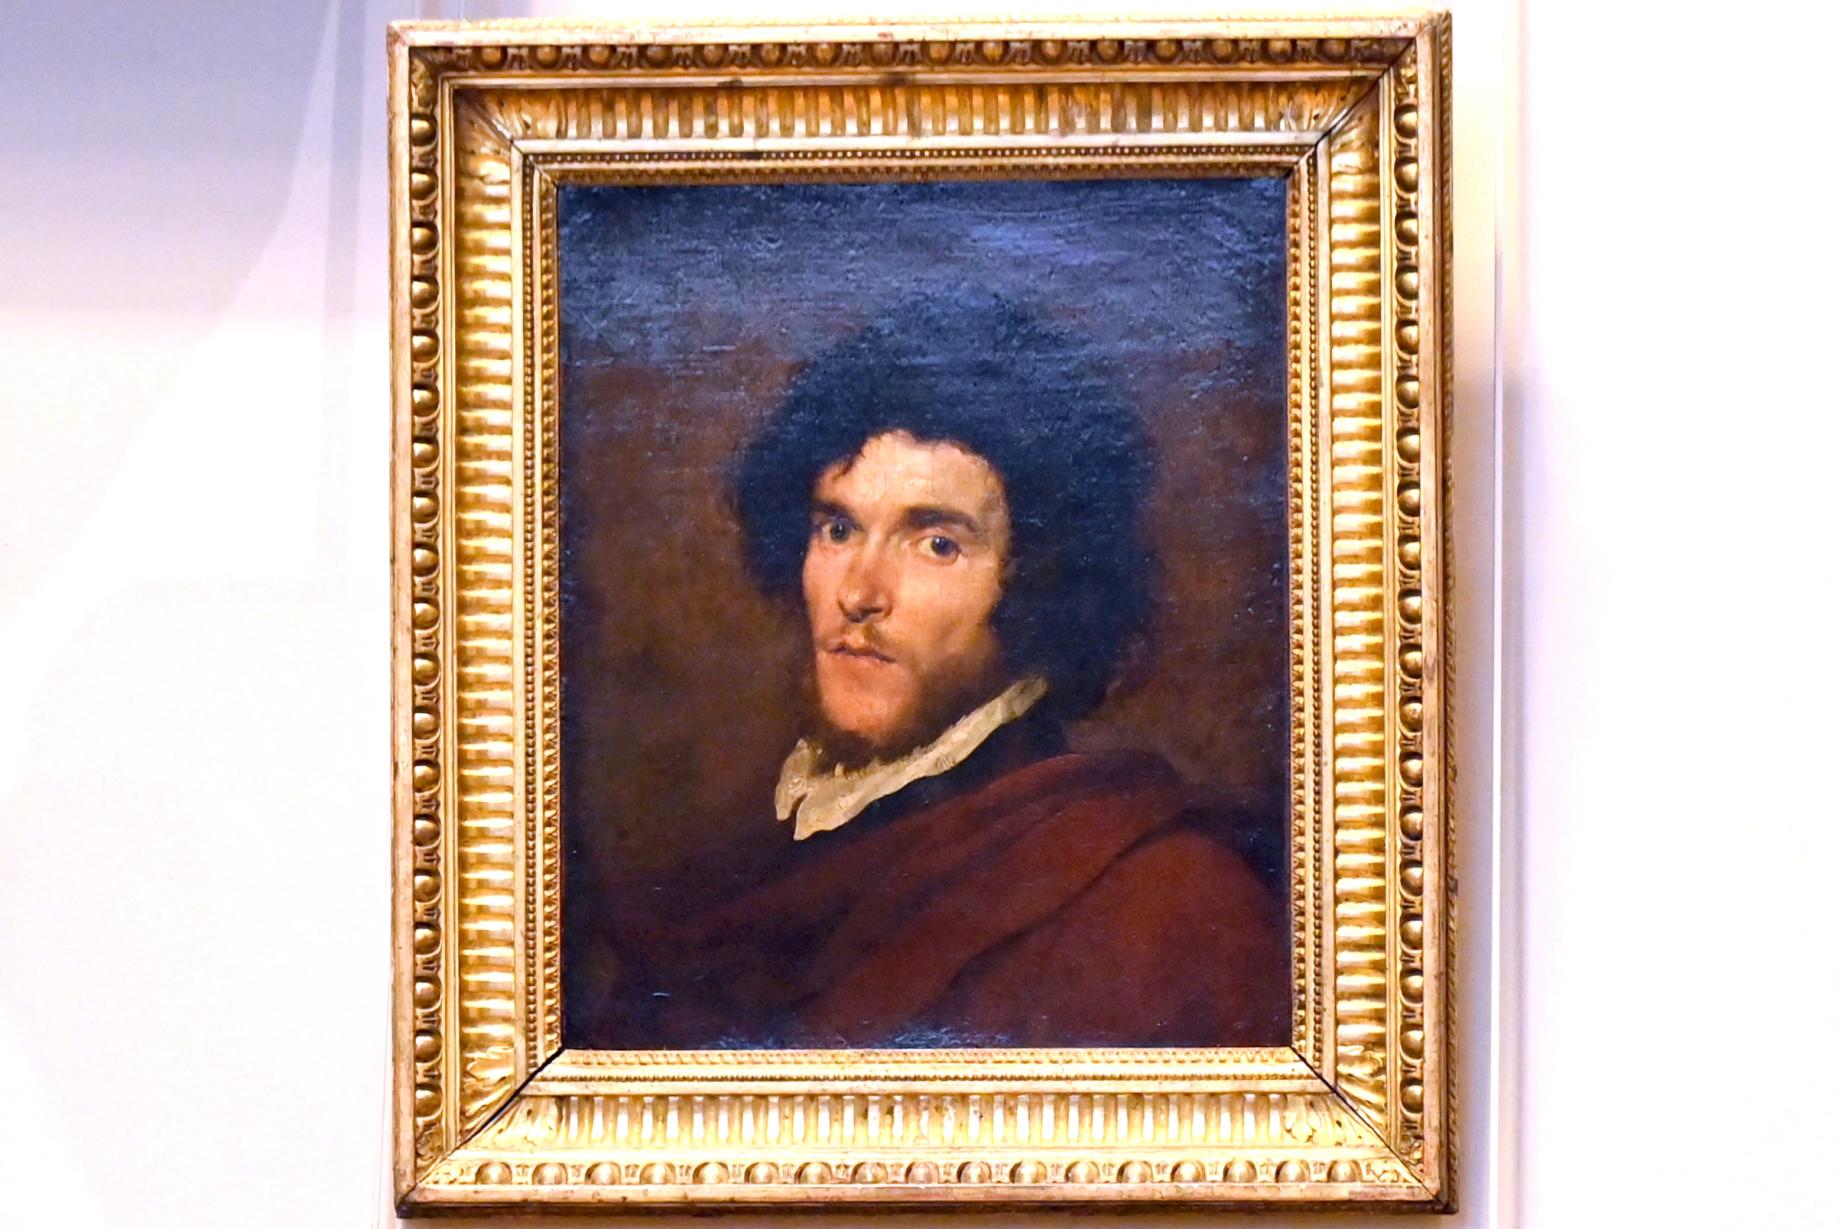 Halbfiguriges Porträt eines Mannes, Paris, Musée du Louvre, Saal 728, um 1630–1650